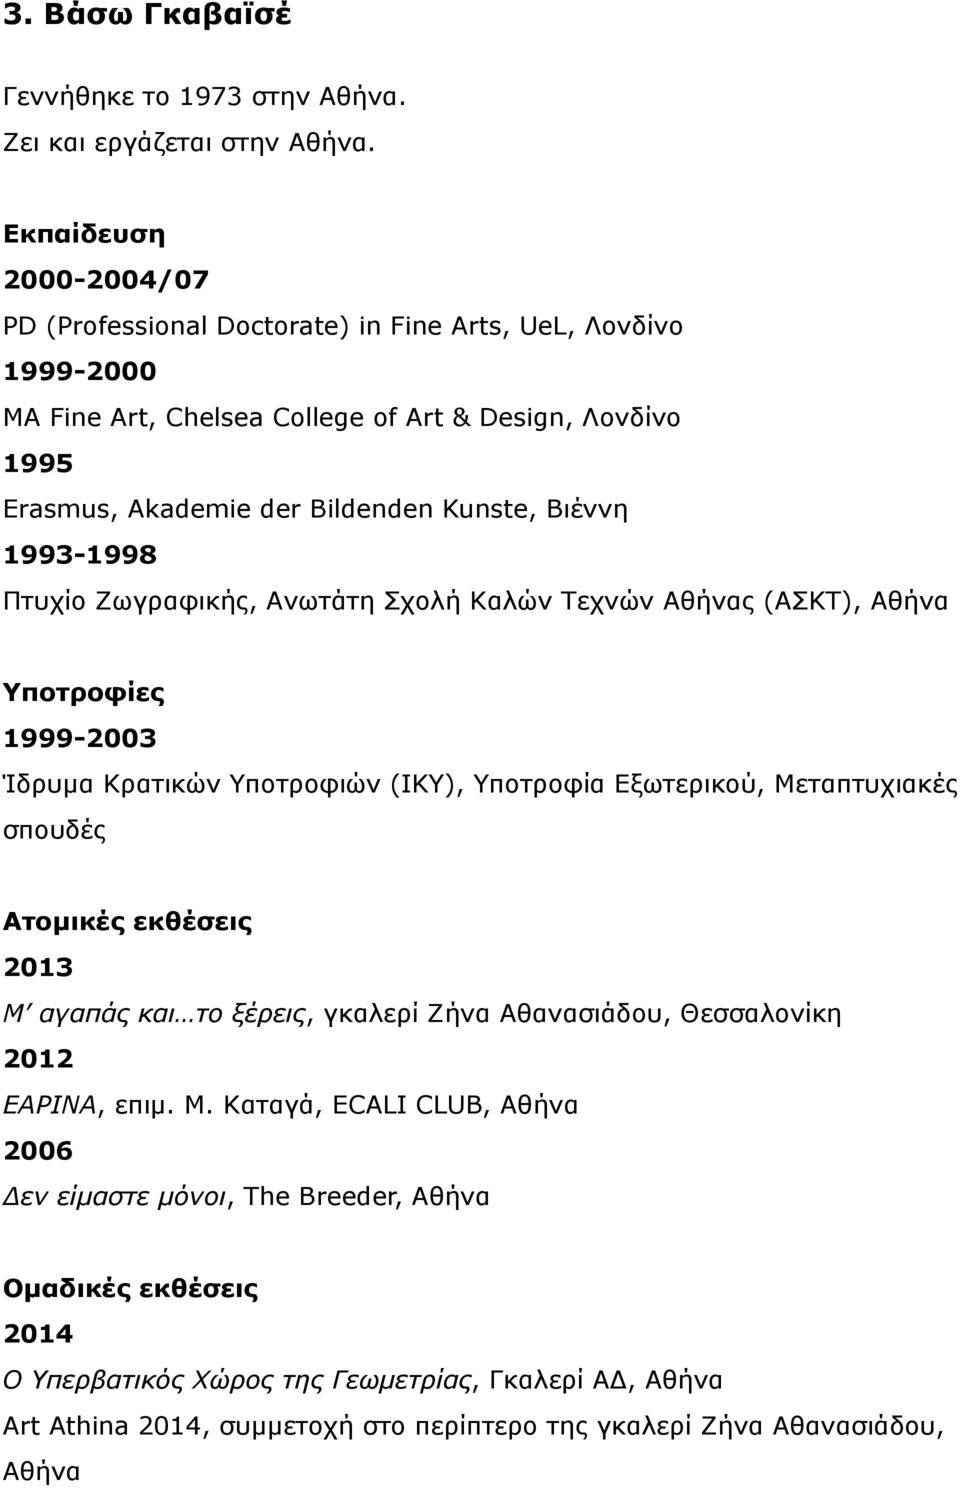 1993-1998 Πτυχίο Ζωγραφικής, Ανωτάτη Σχολή Καλών Τεχνών Αθήνας (ΑΣΚΤ), Αθήνα Υποτροφίες 1999-2003 Ίδρυµα Κρατικών Υποτροφιών (IKY), Υποτροφία Εξωτερικού, Μεταπτυχιακές σπουδές Ατοµικές εκθέσεις